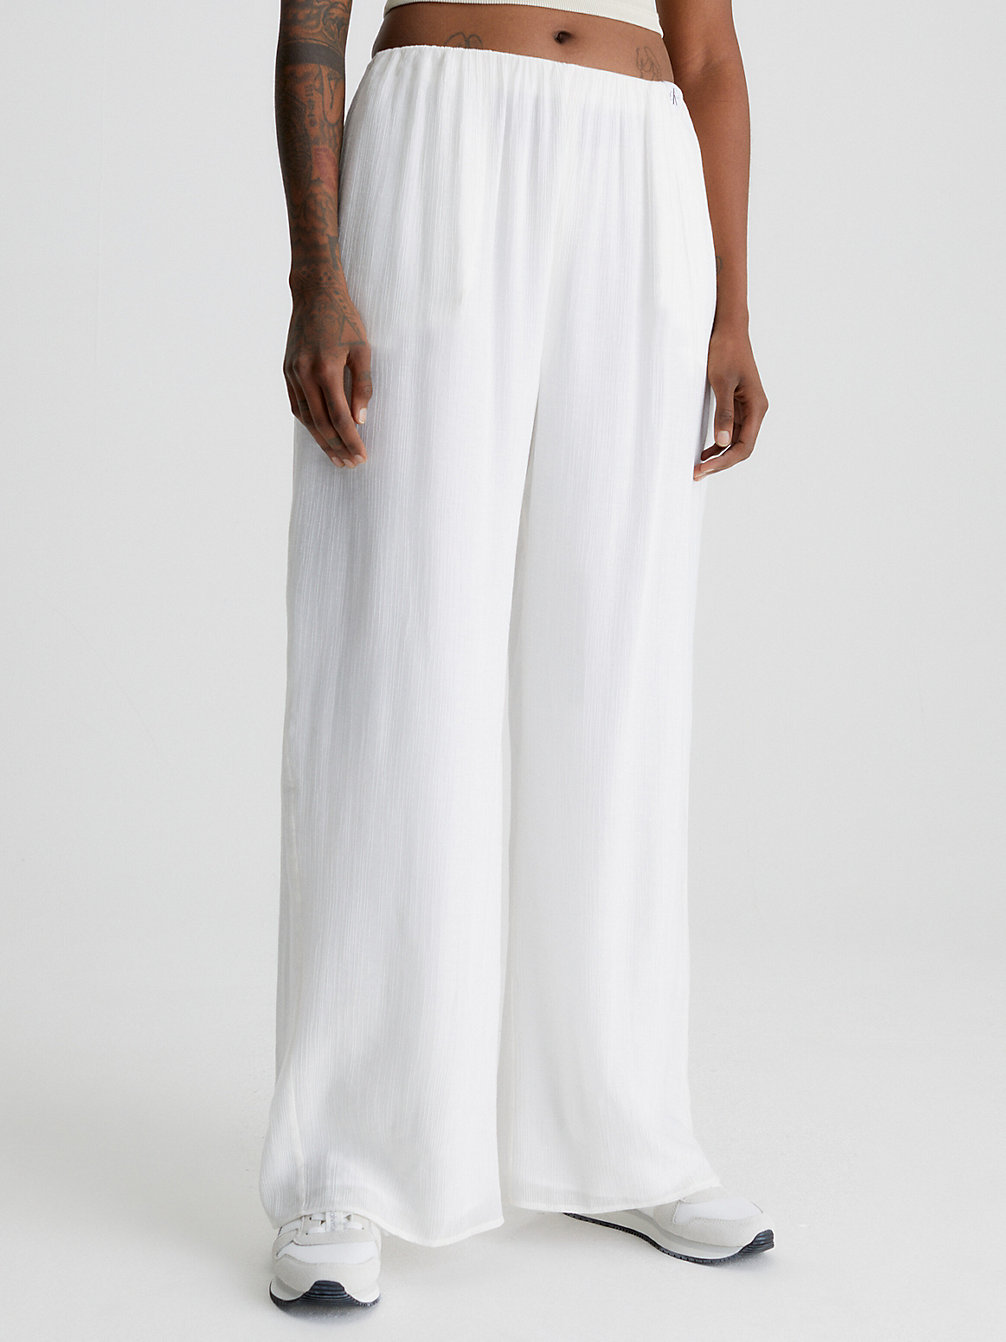 ANCIENT WHITE > Spodnie Z Szerokimi Nogawkami Z Marszczonego Rayonu > undefined Kobiety - Calvin Klein